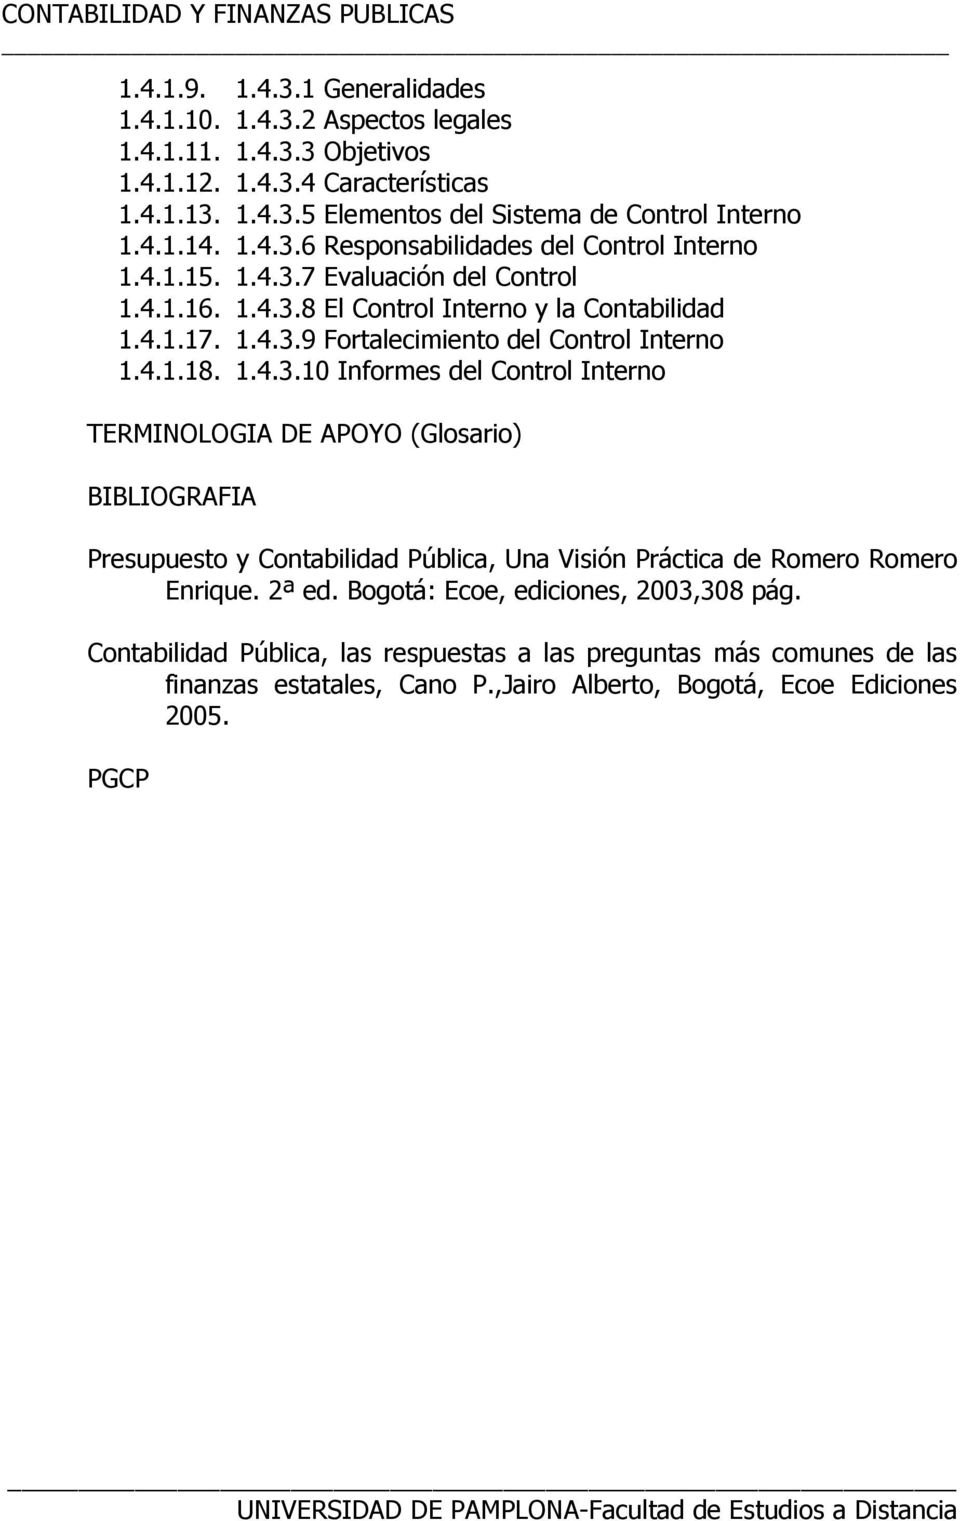 2ª ed. Bogotá: Ecoe, ediciones, 2003,308 pág. Contabilidad Pública, las respuestas a las preguntas más comunes de las finanzas estatales, Cano P.,Jairo Alberto, Bogotá, Ecoe Ediciones 2005.